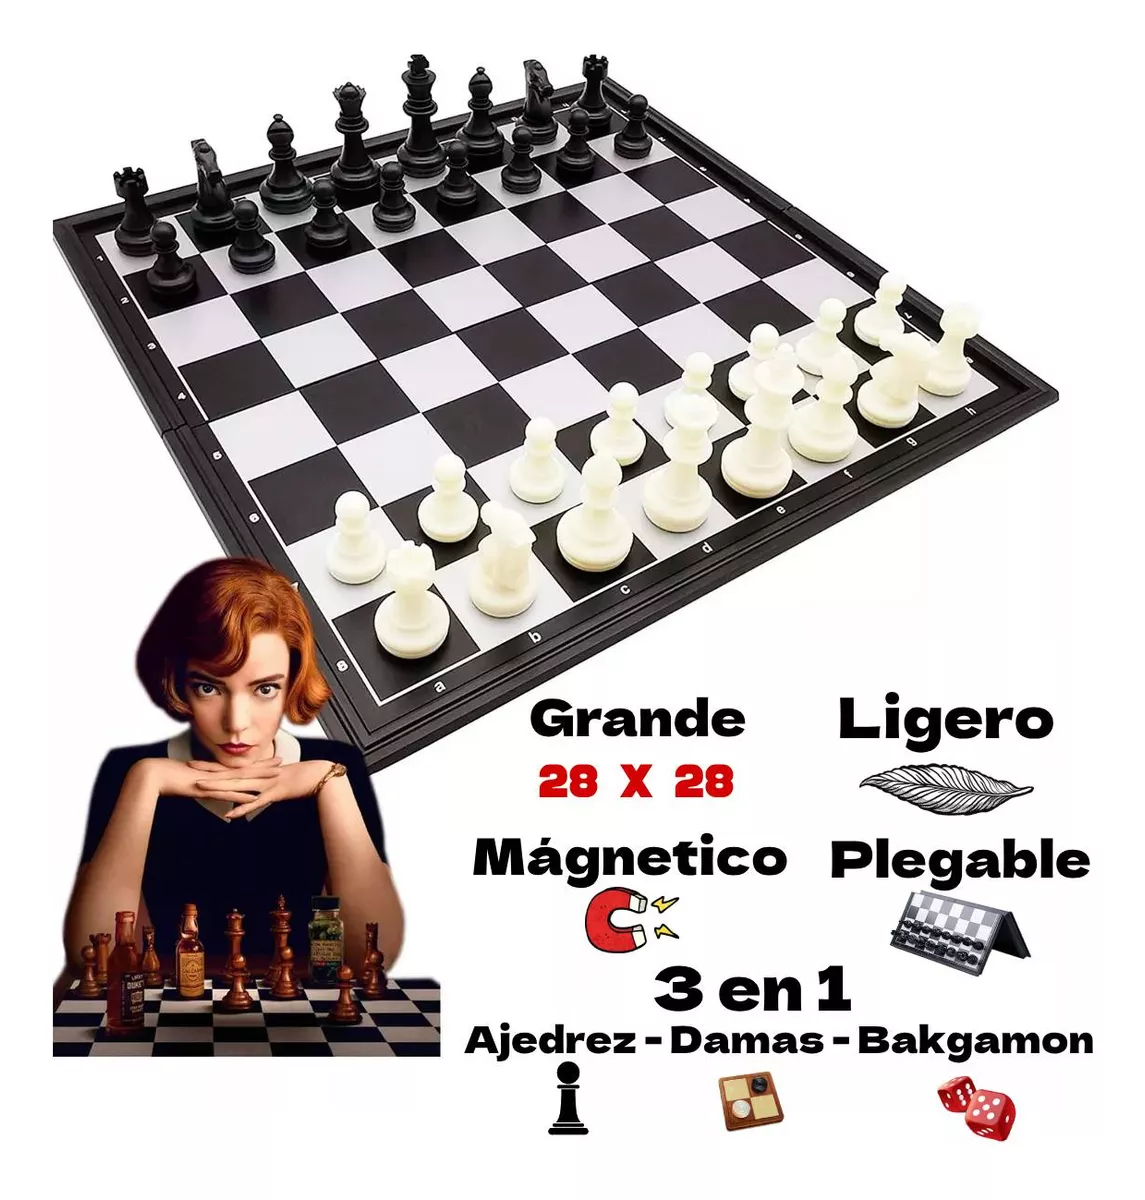 Primera imagen para búsqueda de ajedrez mario bros